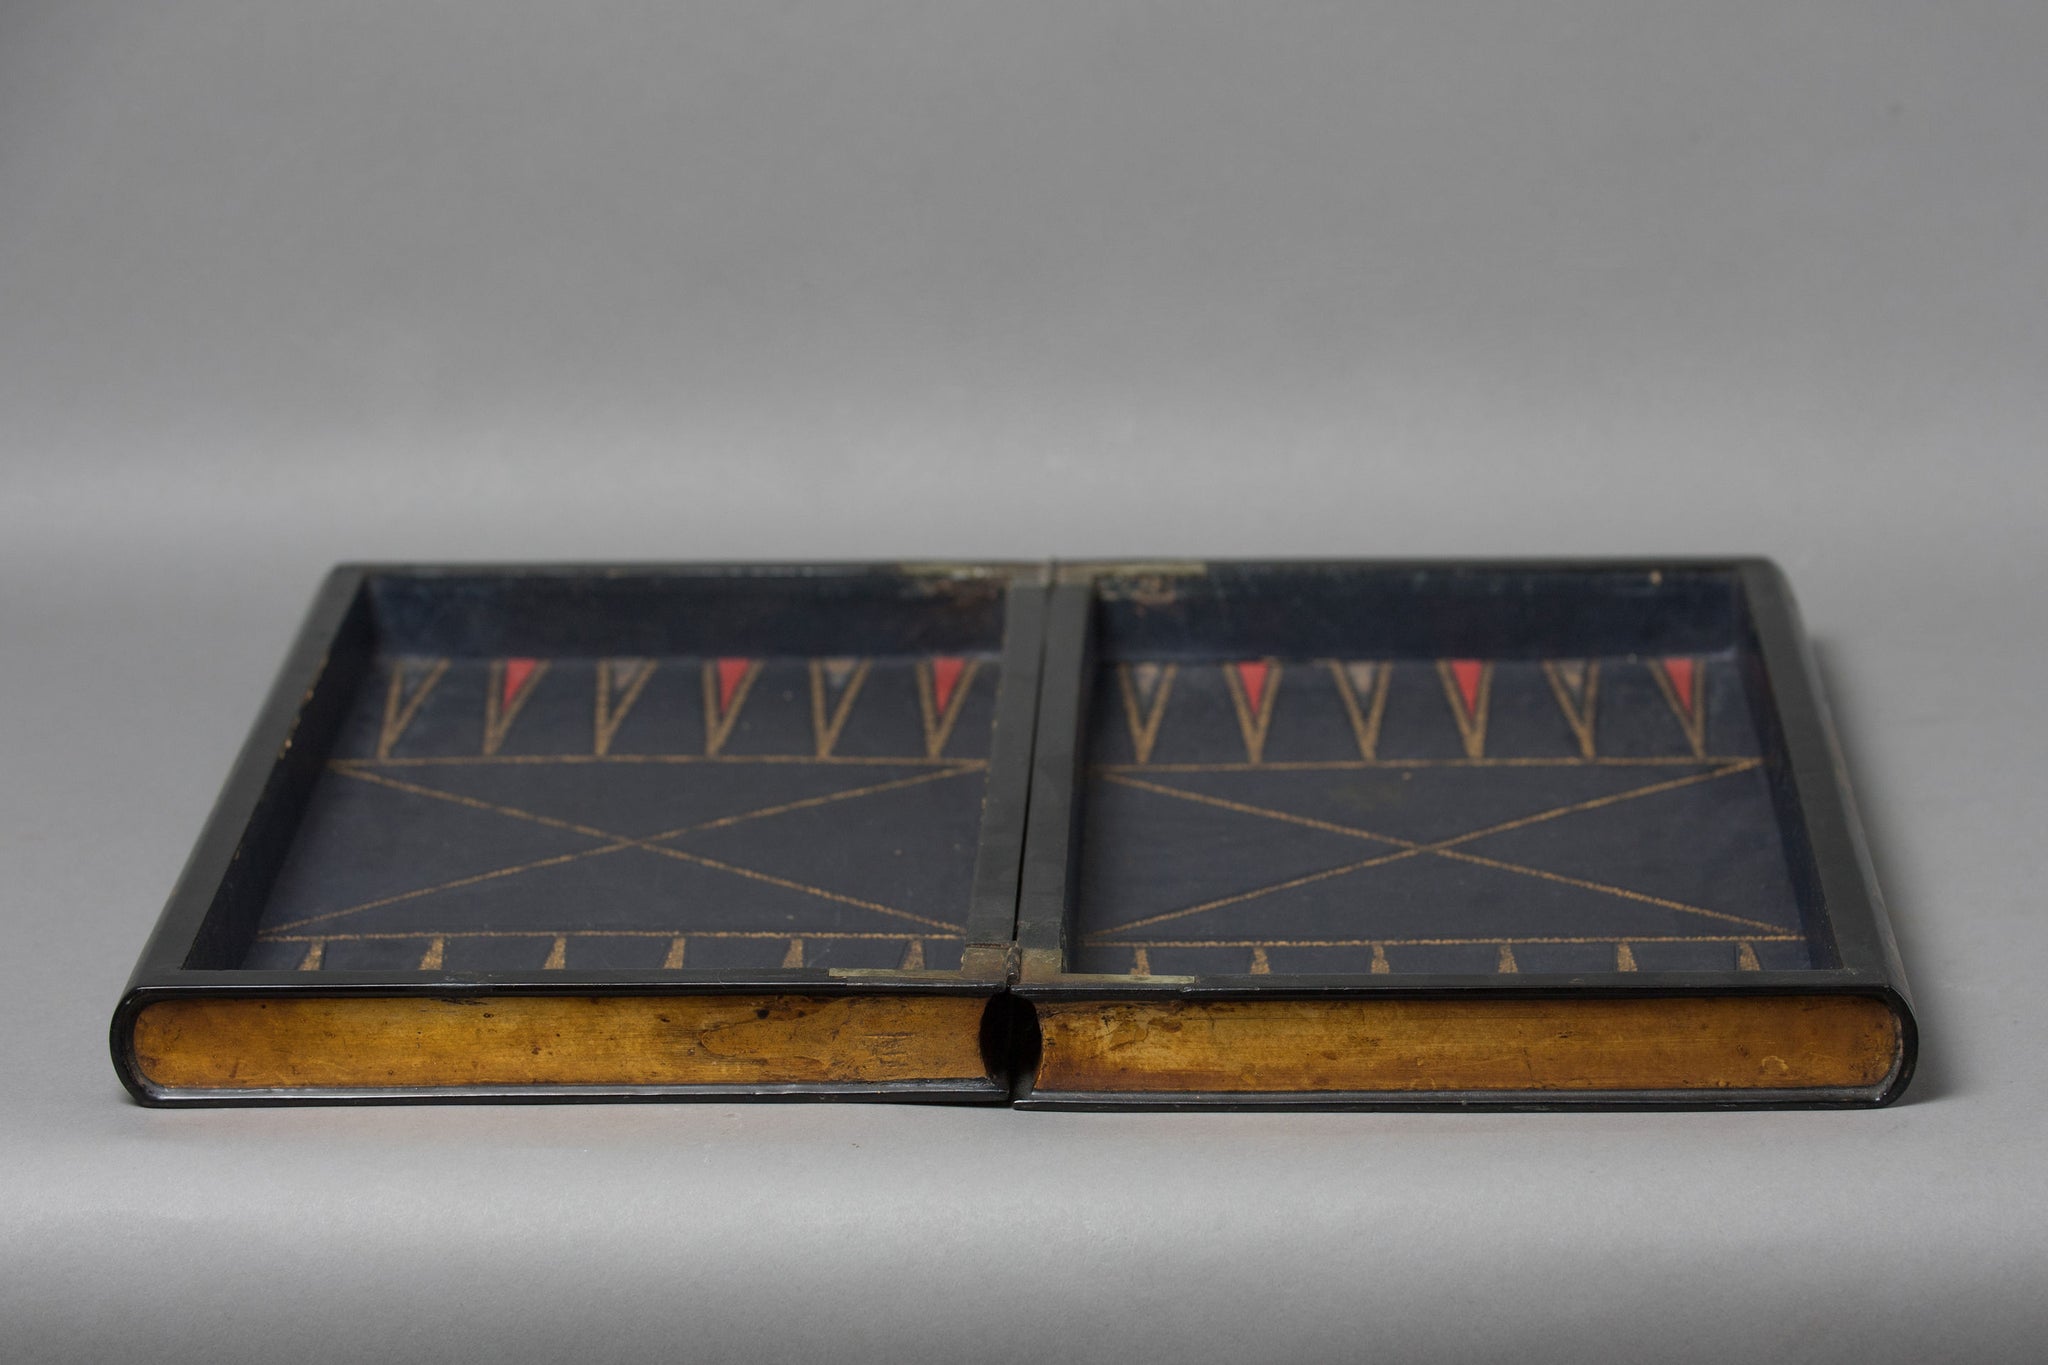 Staunton Chess & Backgammon Board in the Form of a Two Volume Folio